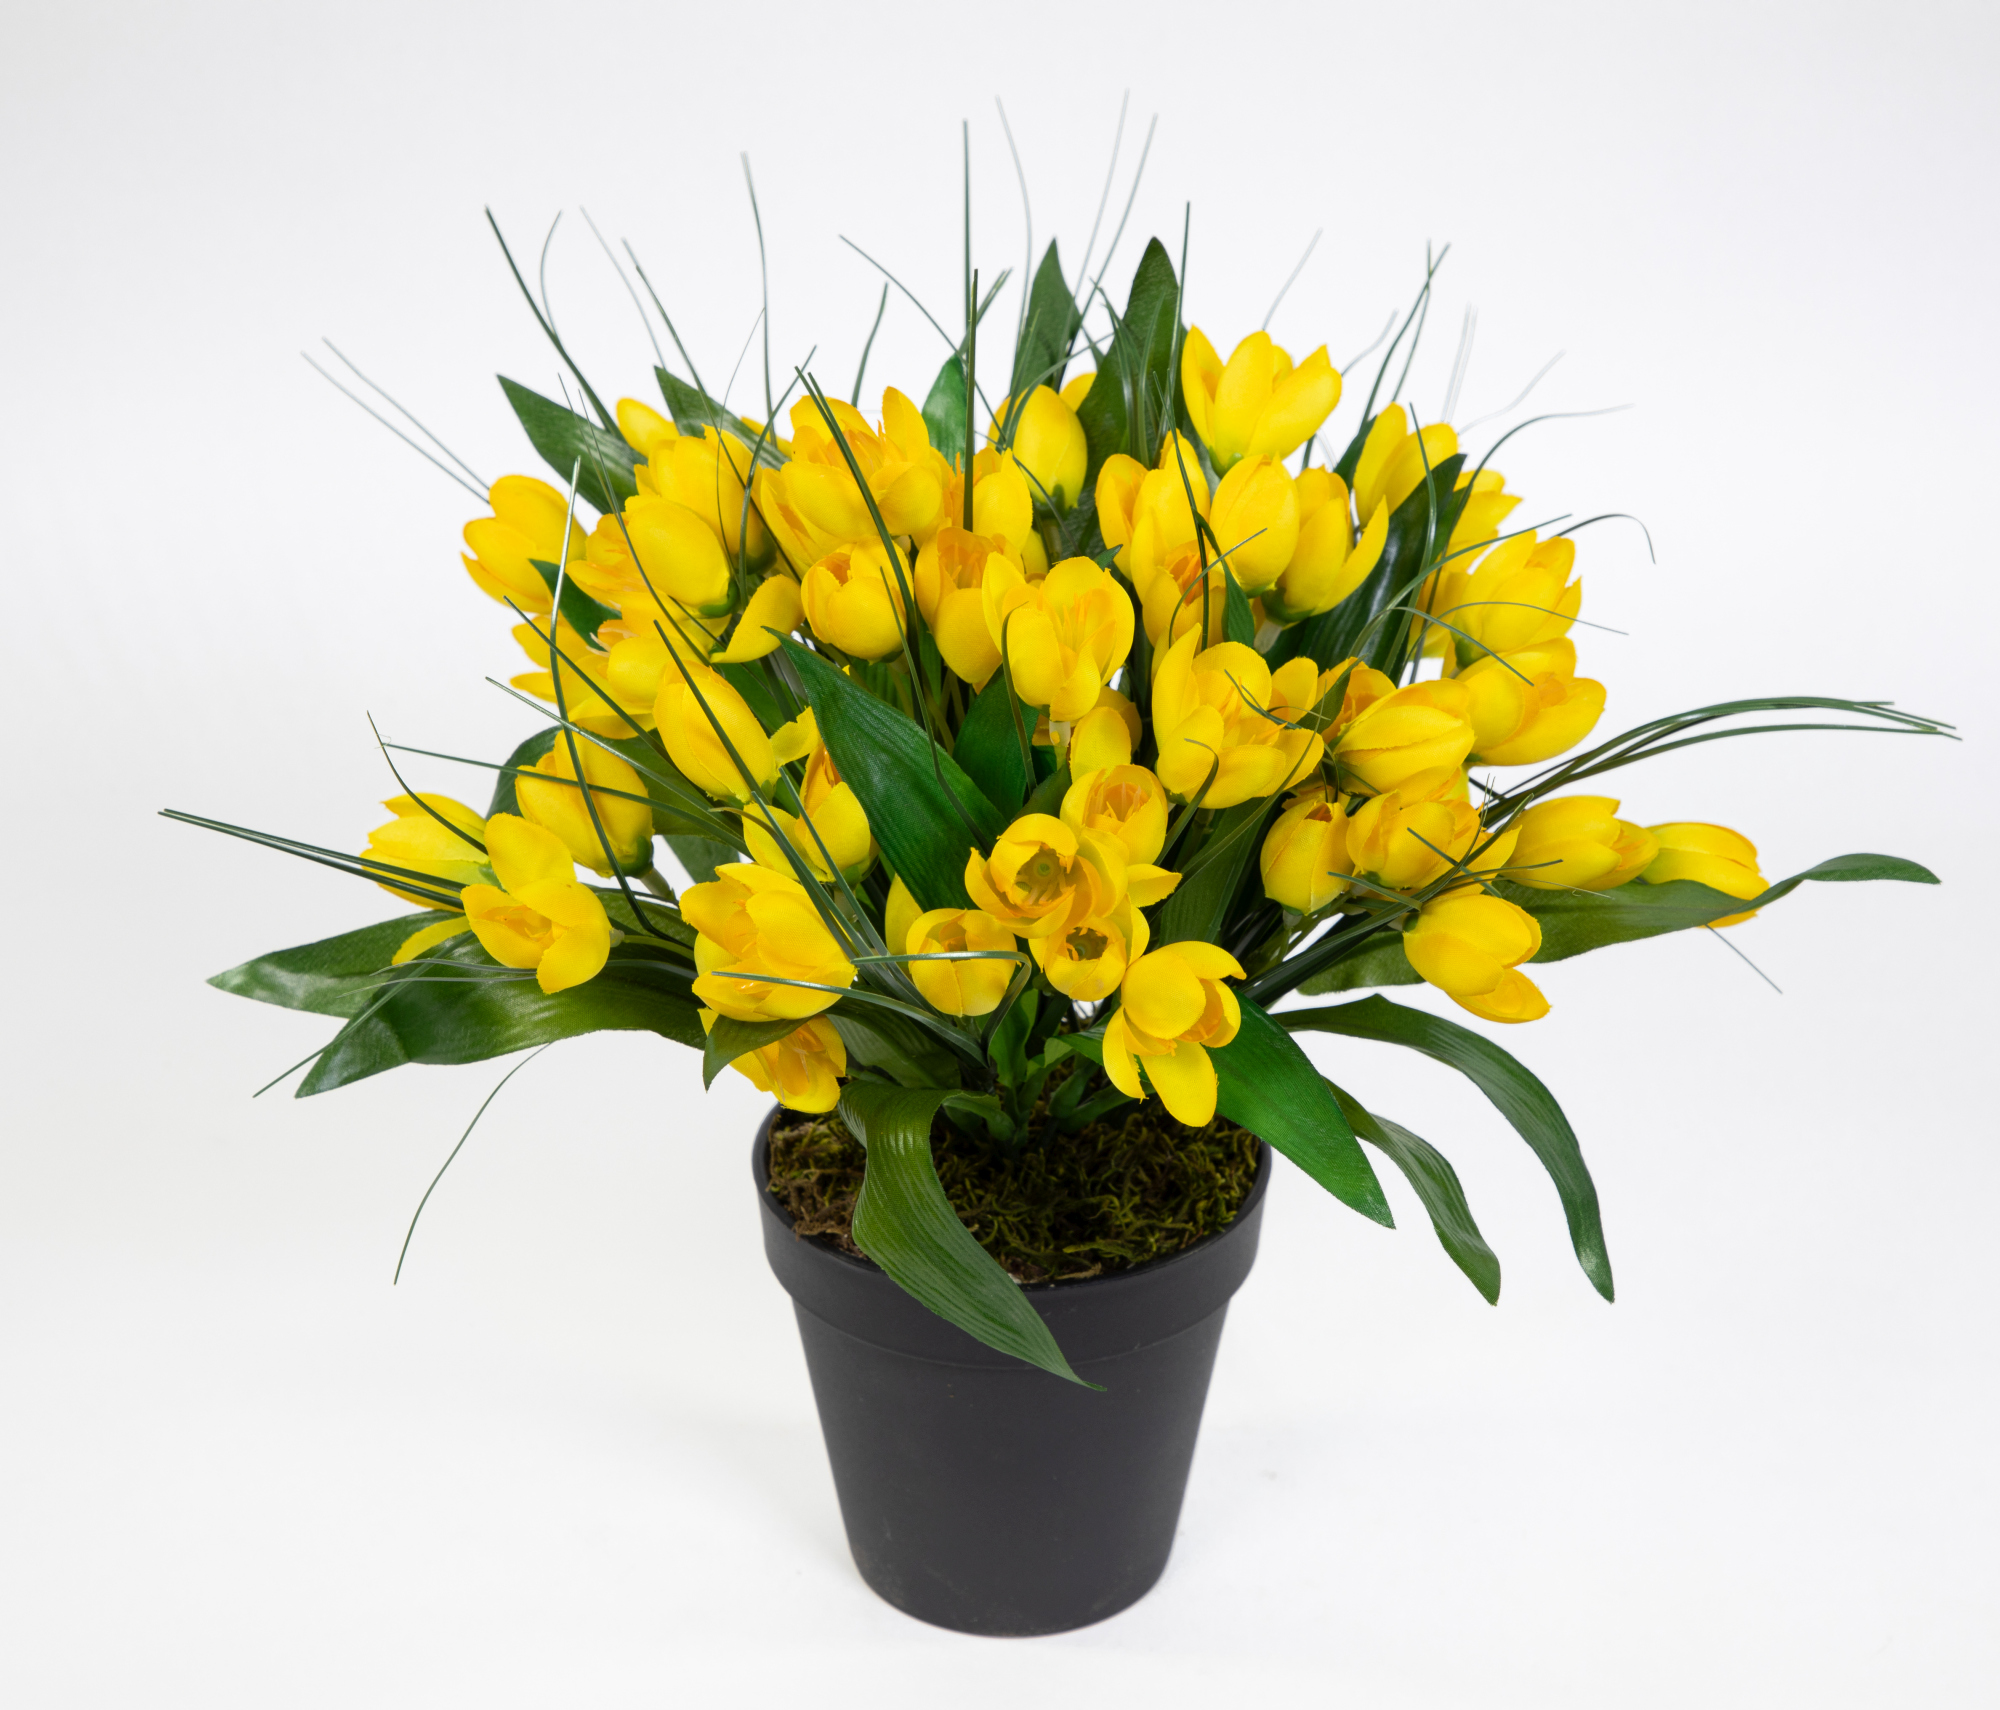 Krokusbusch 28cm gelb im Topf PM Kunstpflanzen Kunstblumen künstlicher Crocus Krokus Blumen